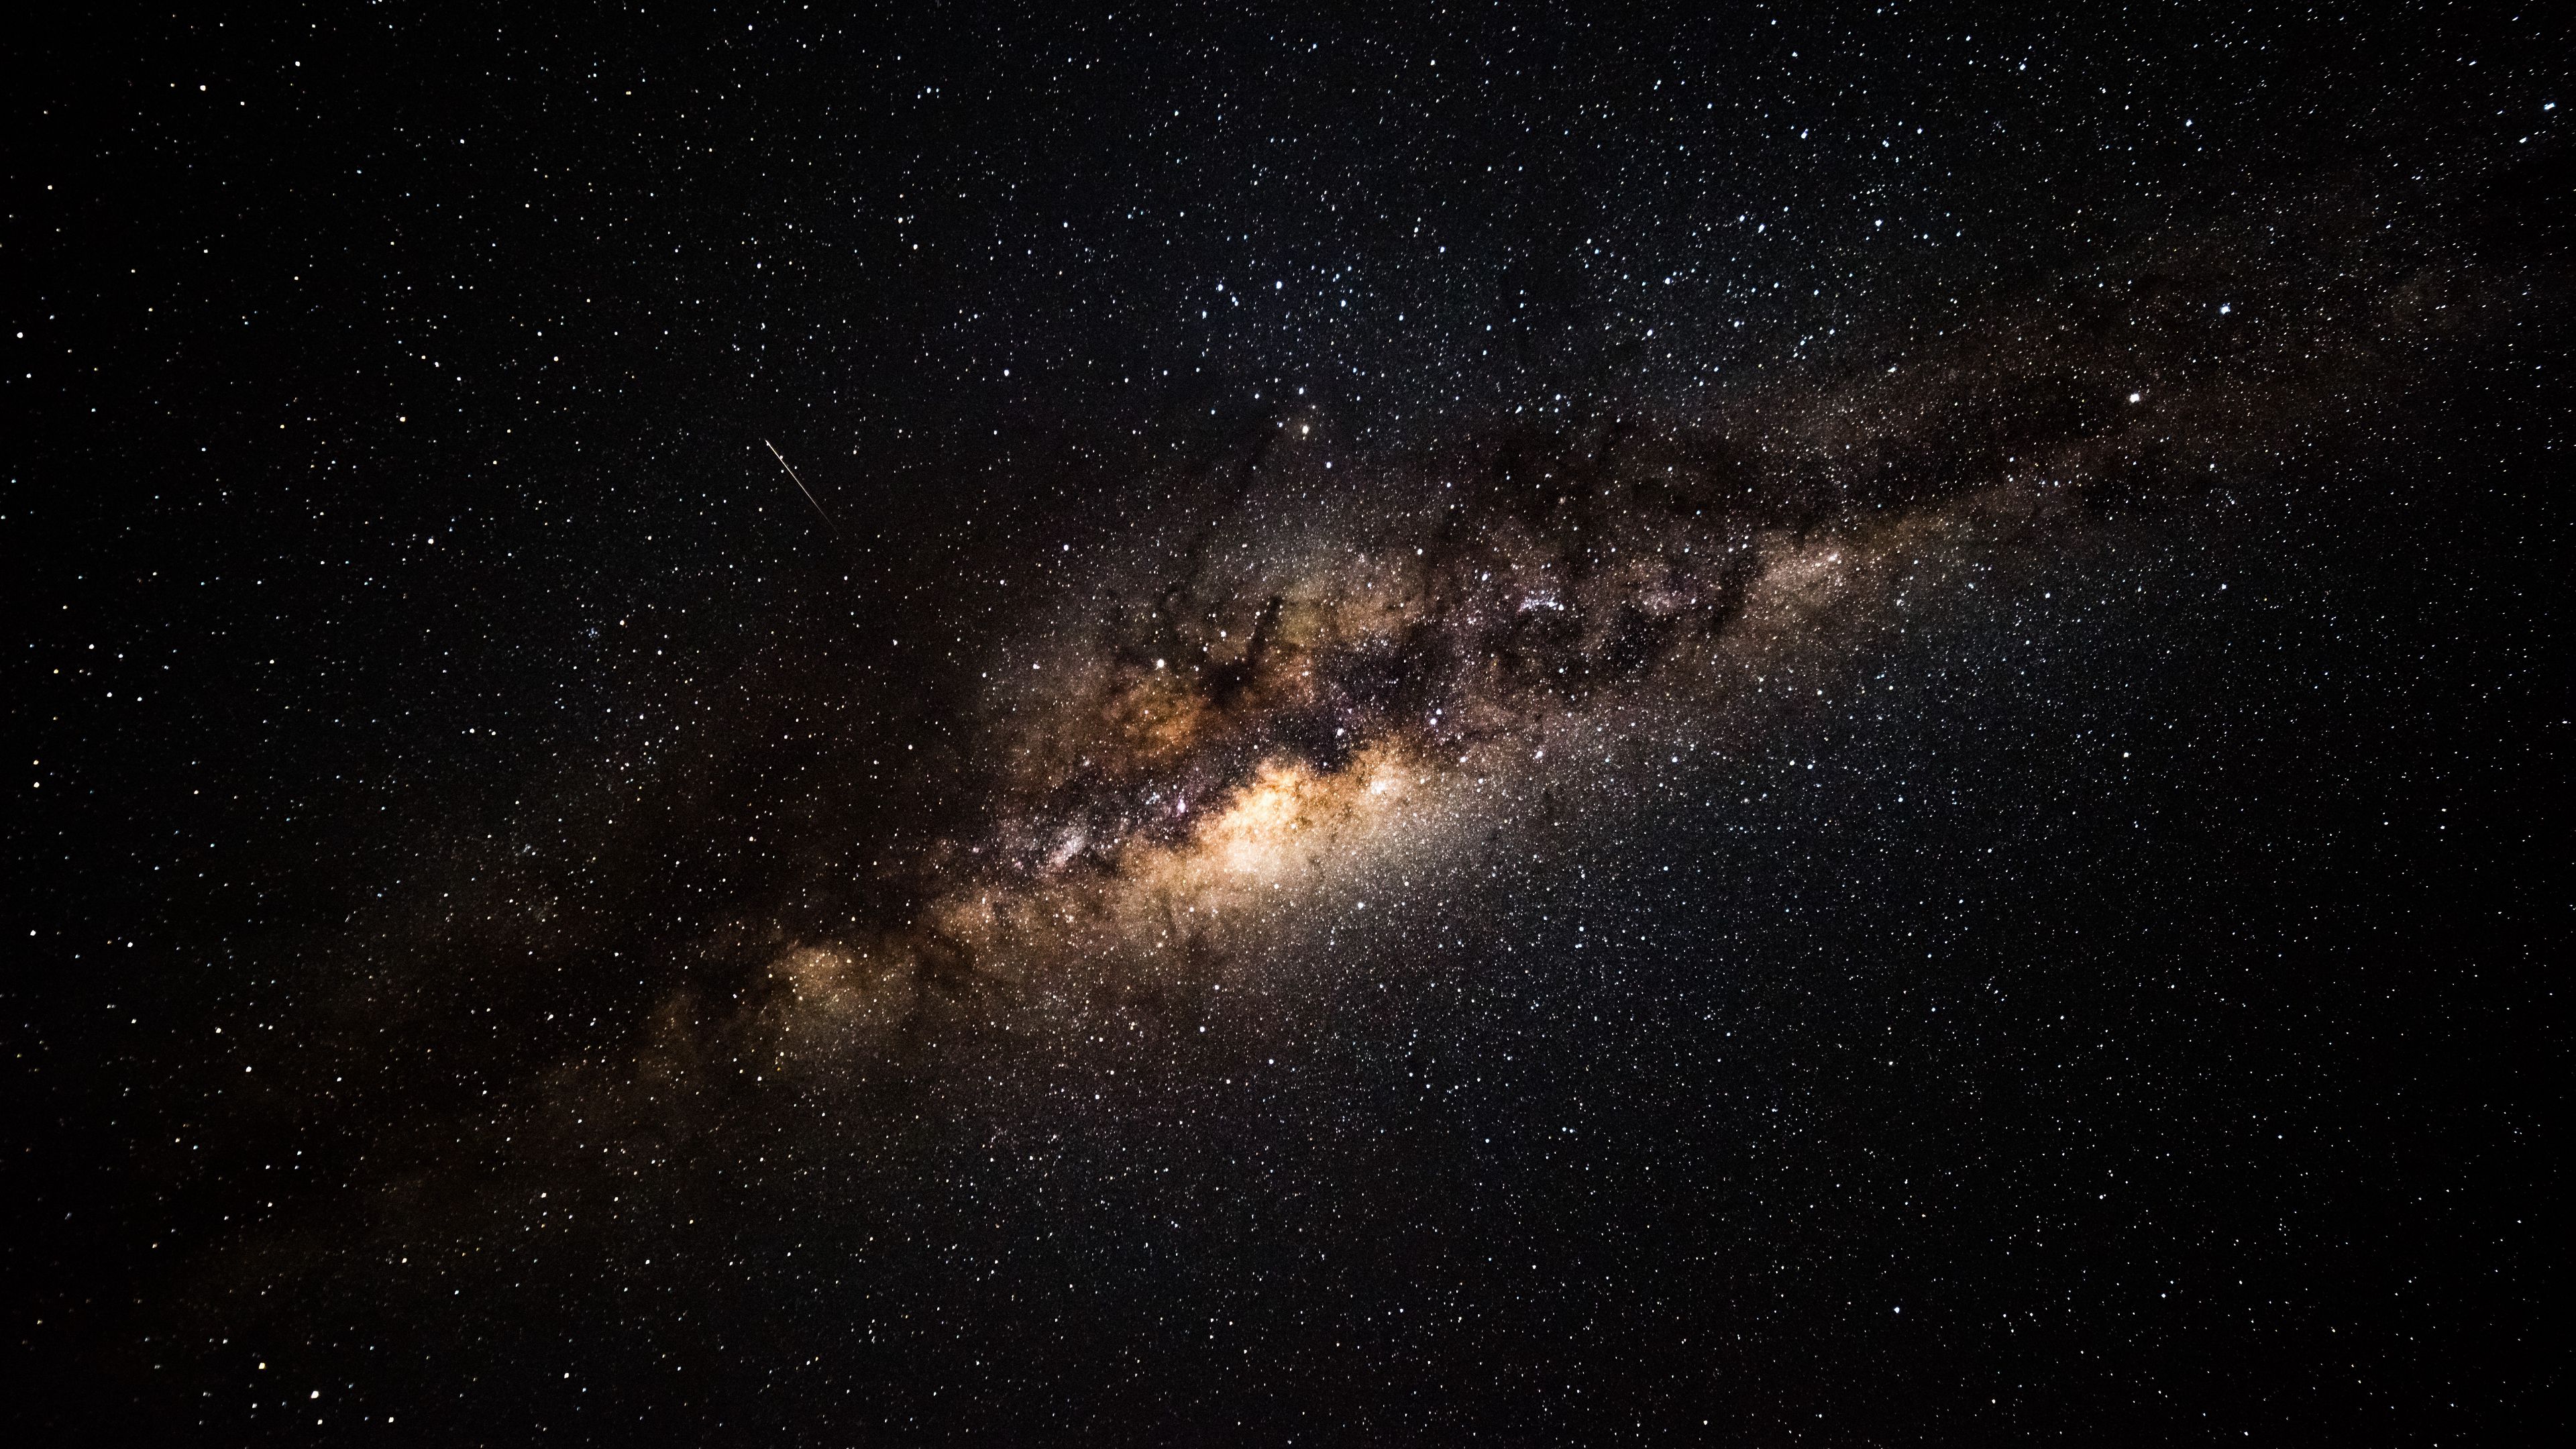 Tận hưởng bầu trời đêm đầy sao và những vì sao lấp lánh trên hình nền ngân hà 4K UHD. Đường viền của dải ngân hà trông như là một con đường màu xanh dương và vất vả để có thể nhìn ra đoạn đường này. Nếu bạn muốn tìm hiểu thêm về sự đăm chặt của không gian vũ trụ, thì hãy tải ngay bức hình nền này.